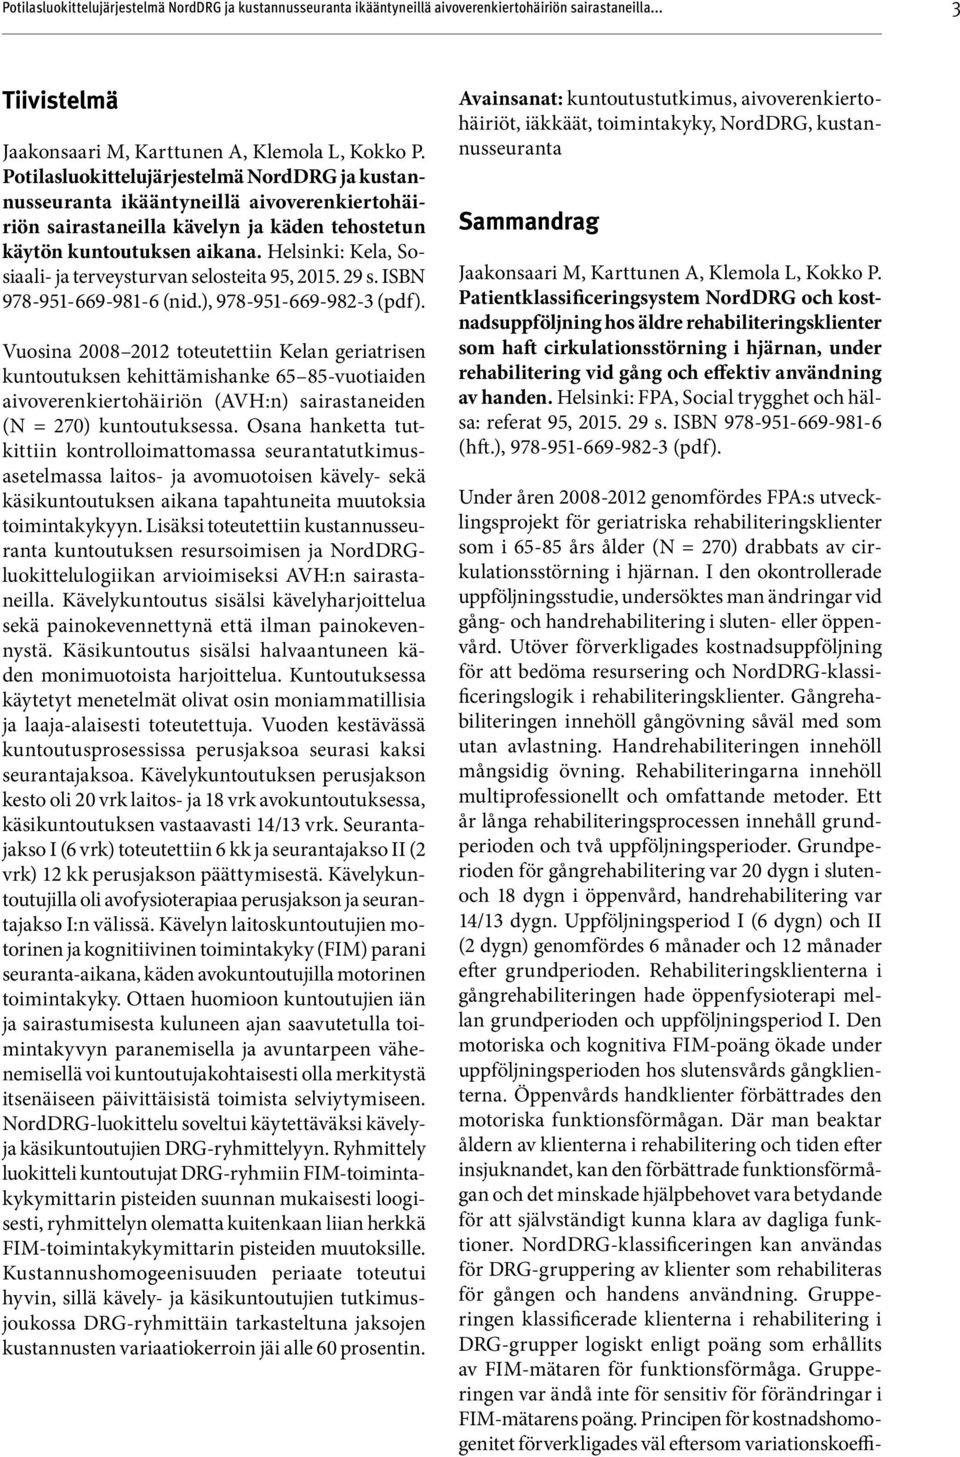 Helsinki: Kela, Sosiaali- ja terveysturvan selosteita 95, 2015. 29 s. ISBN 978-951-669-981-6 (nid.), 978-951-669-982-3 (pdf ).